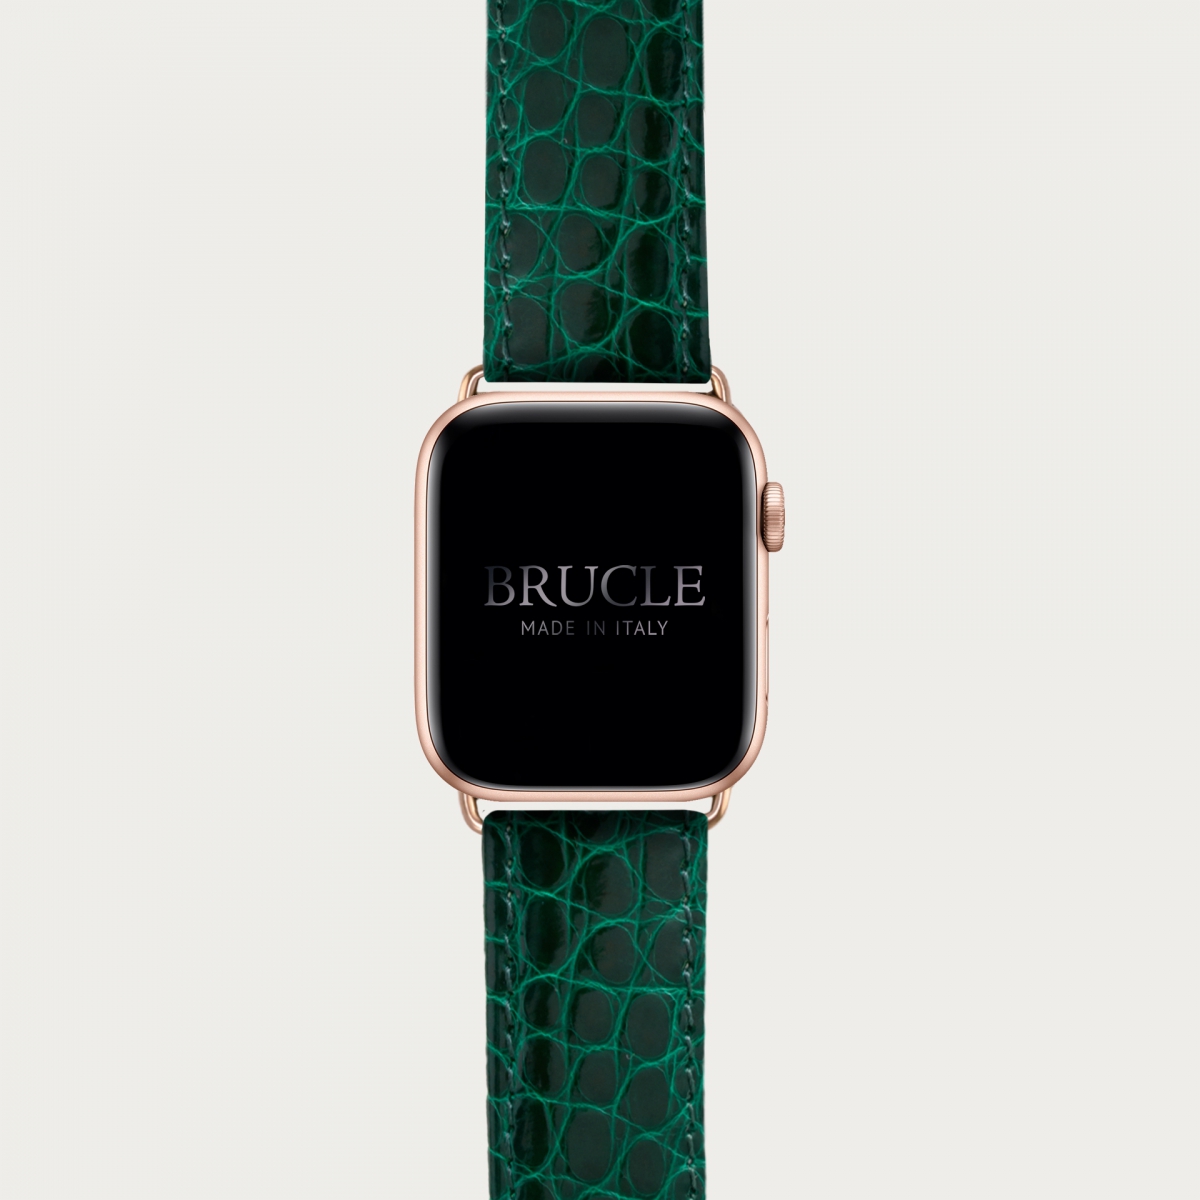 Brucle cinturino verde in vera pelle alligatore per orologio, Compatibile con Apple Watch / Galaxy Samsung